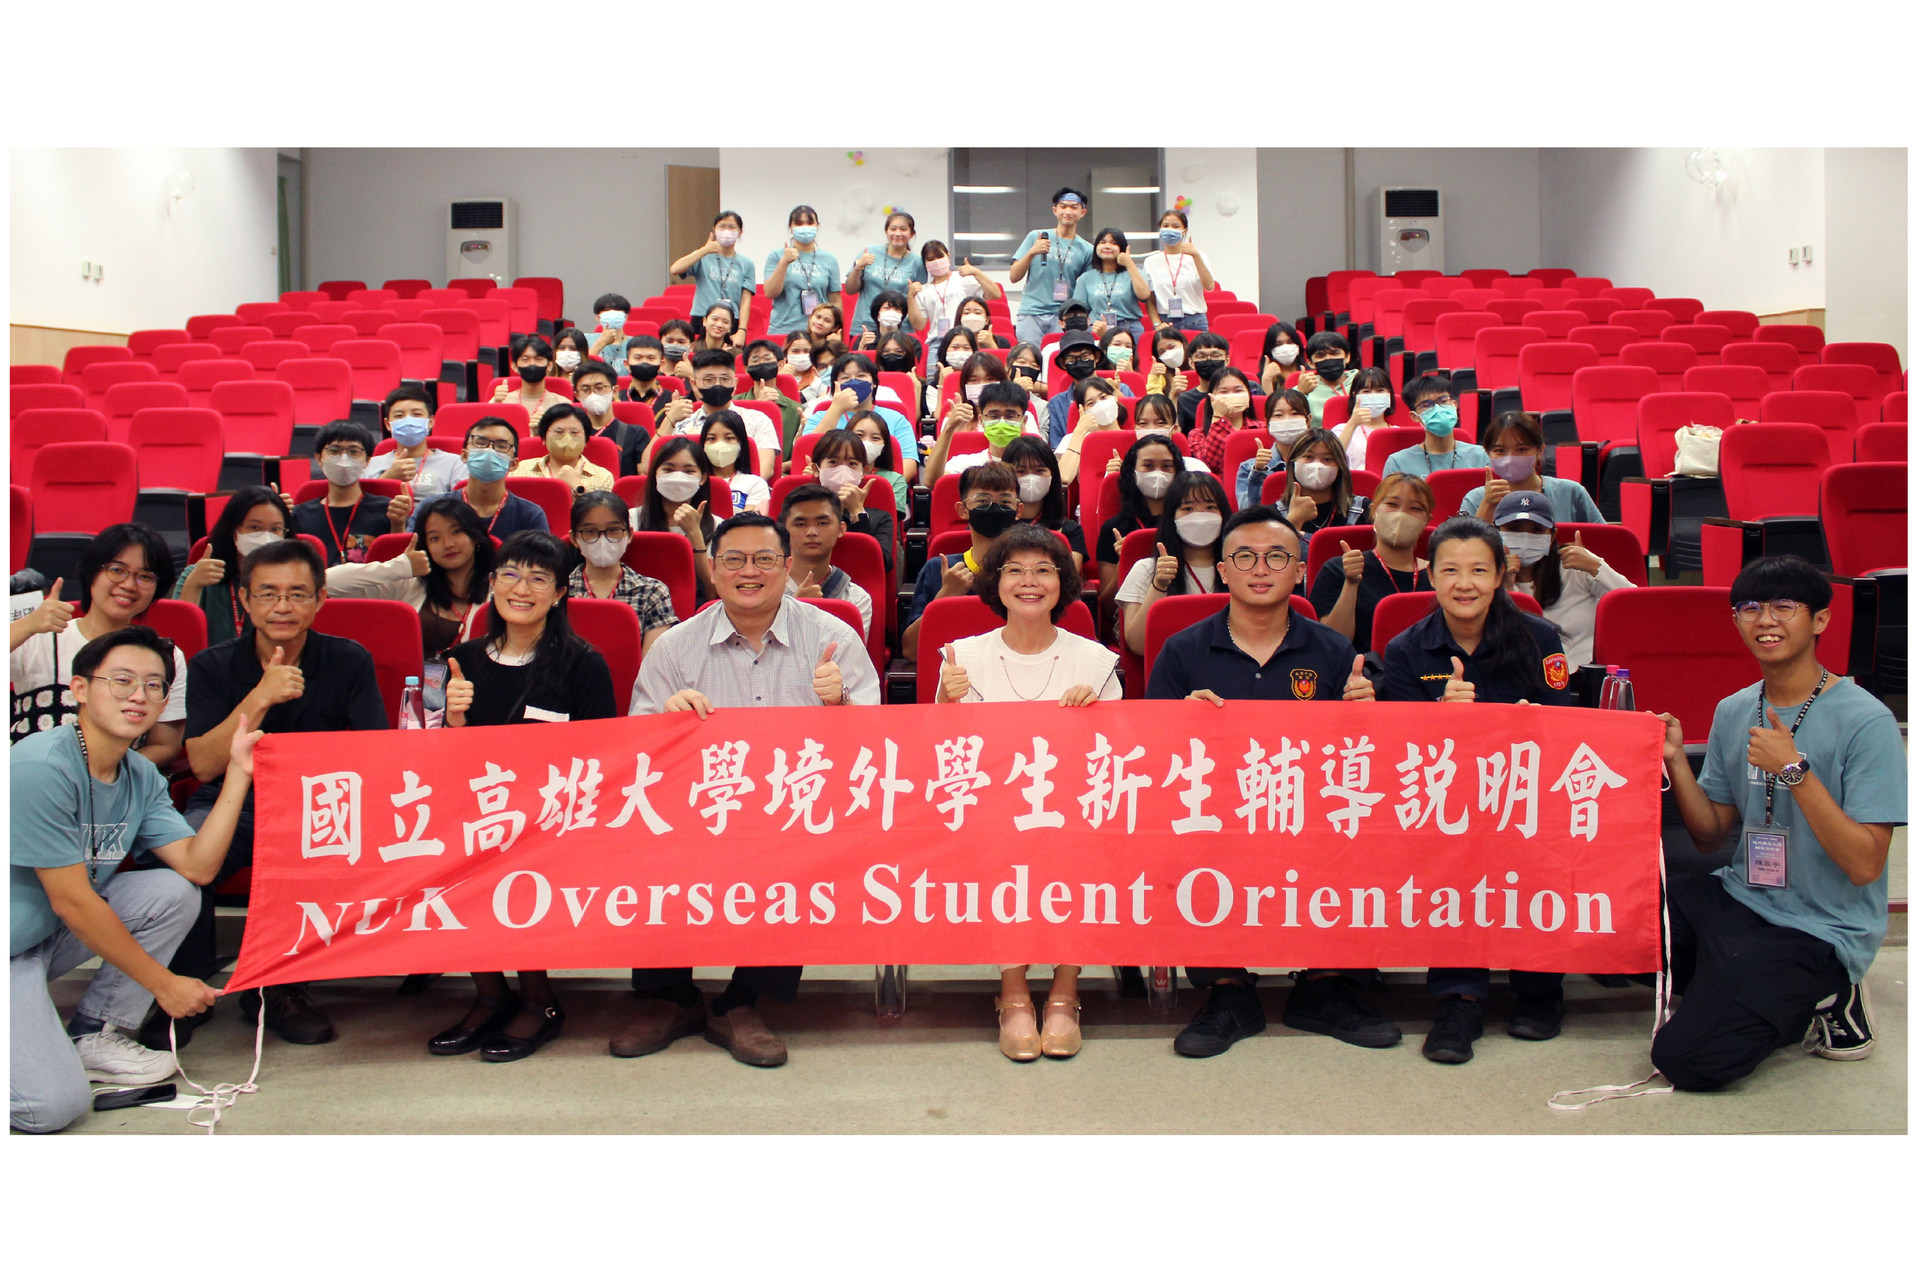 Group photo of NUK Overseas Student Orientation